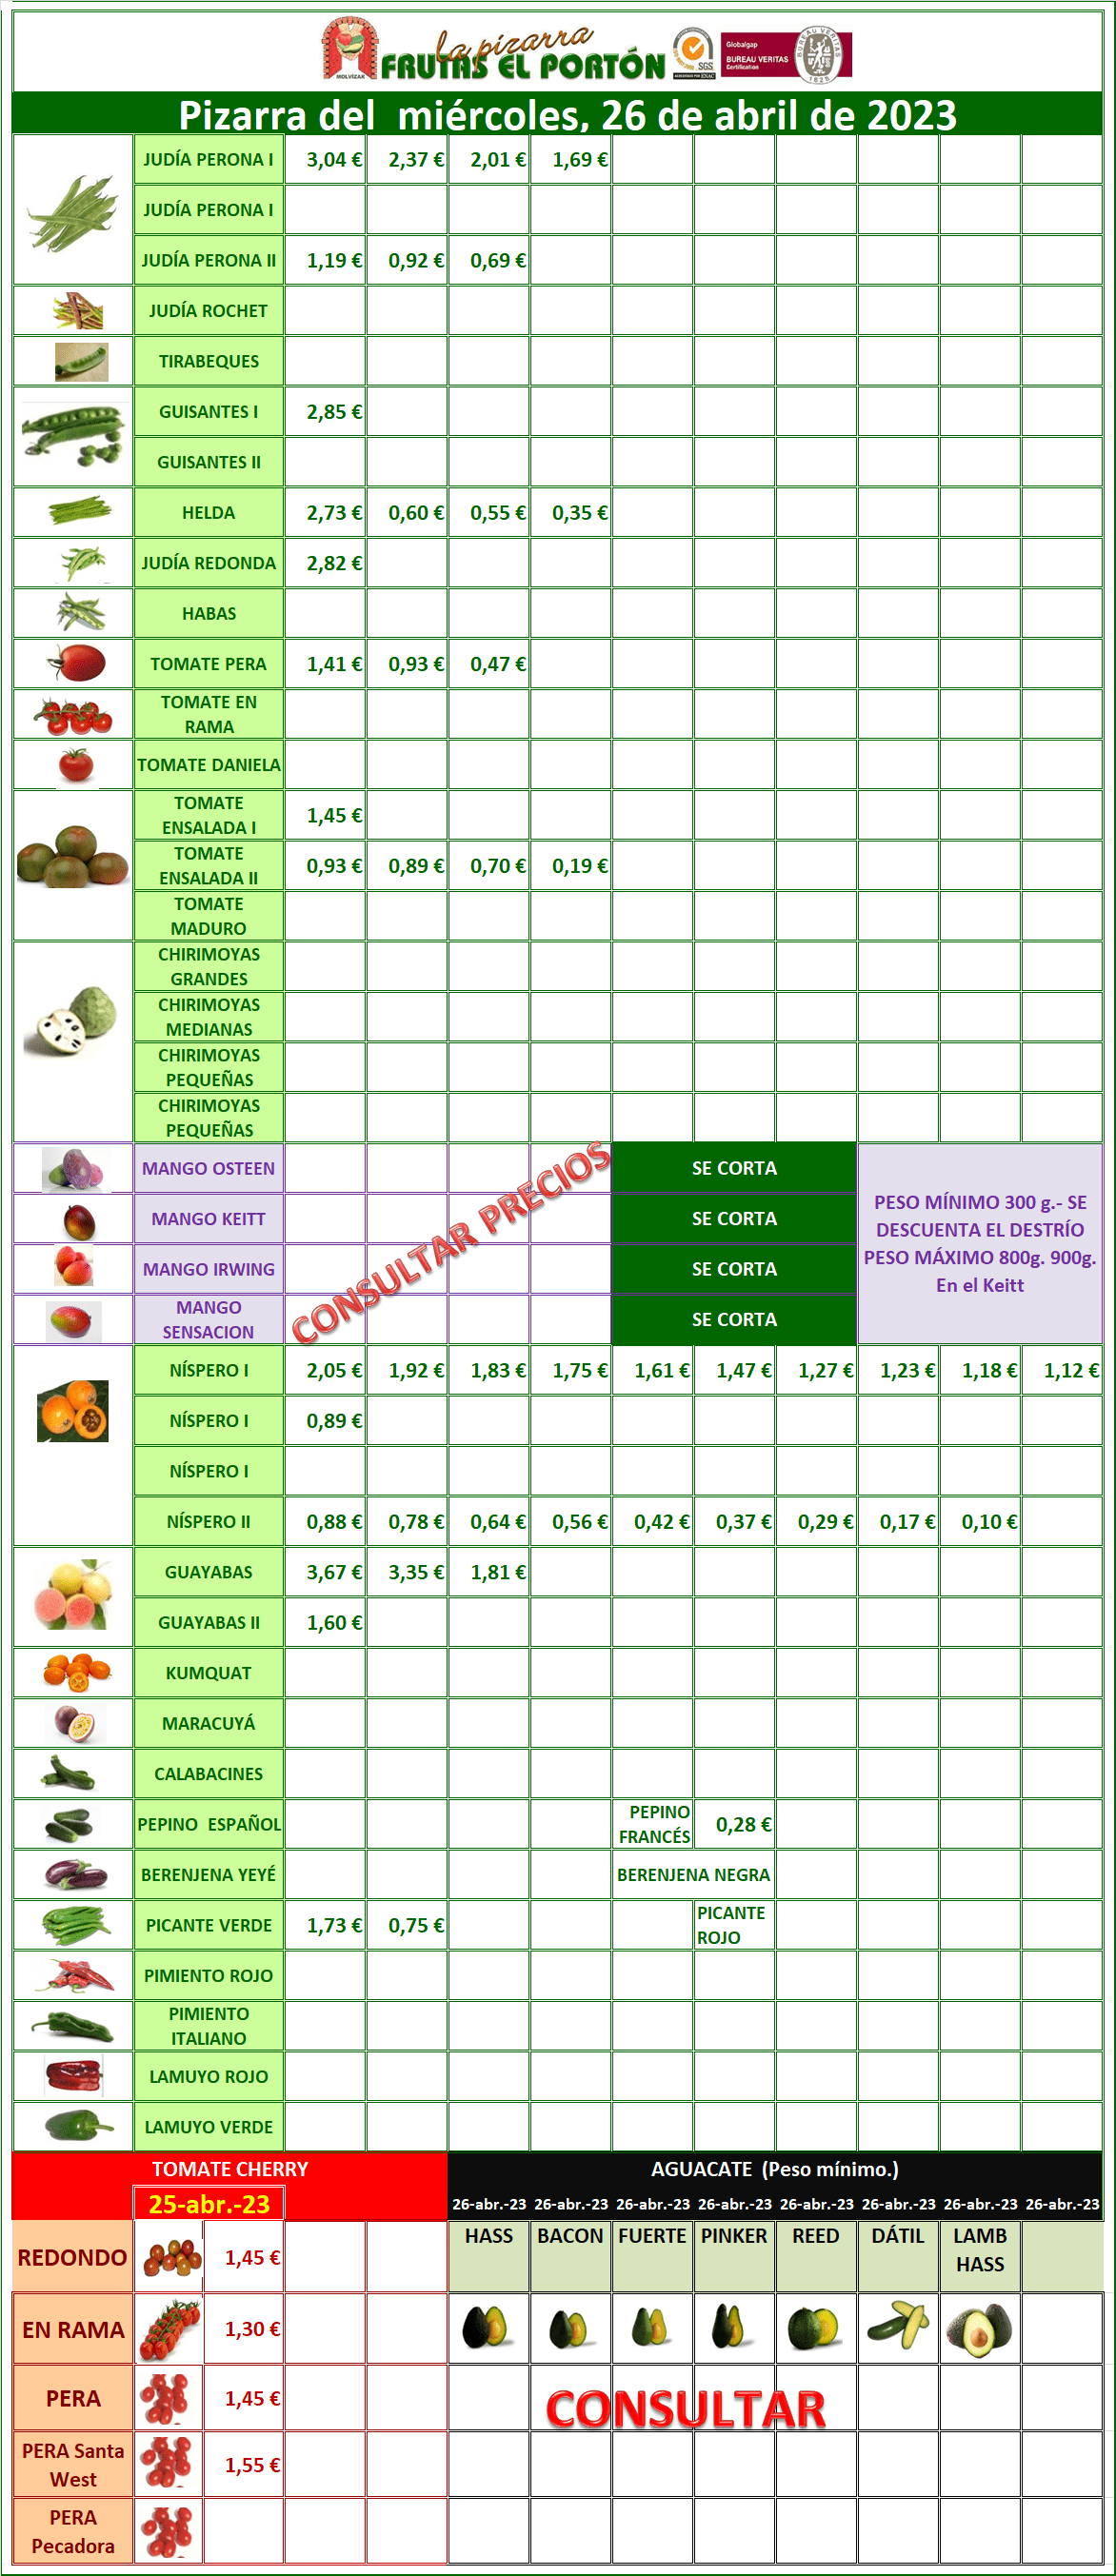 Subasta hortofrutícola Frutas El Portón 26 de abril 2023